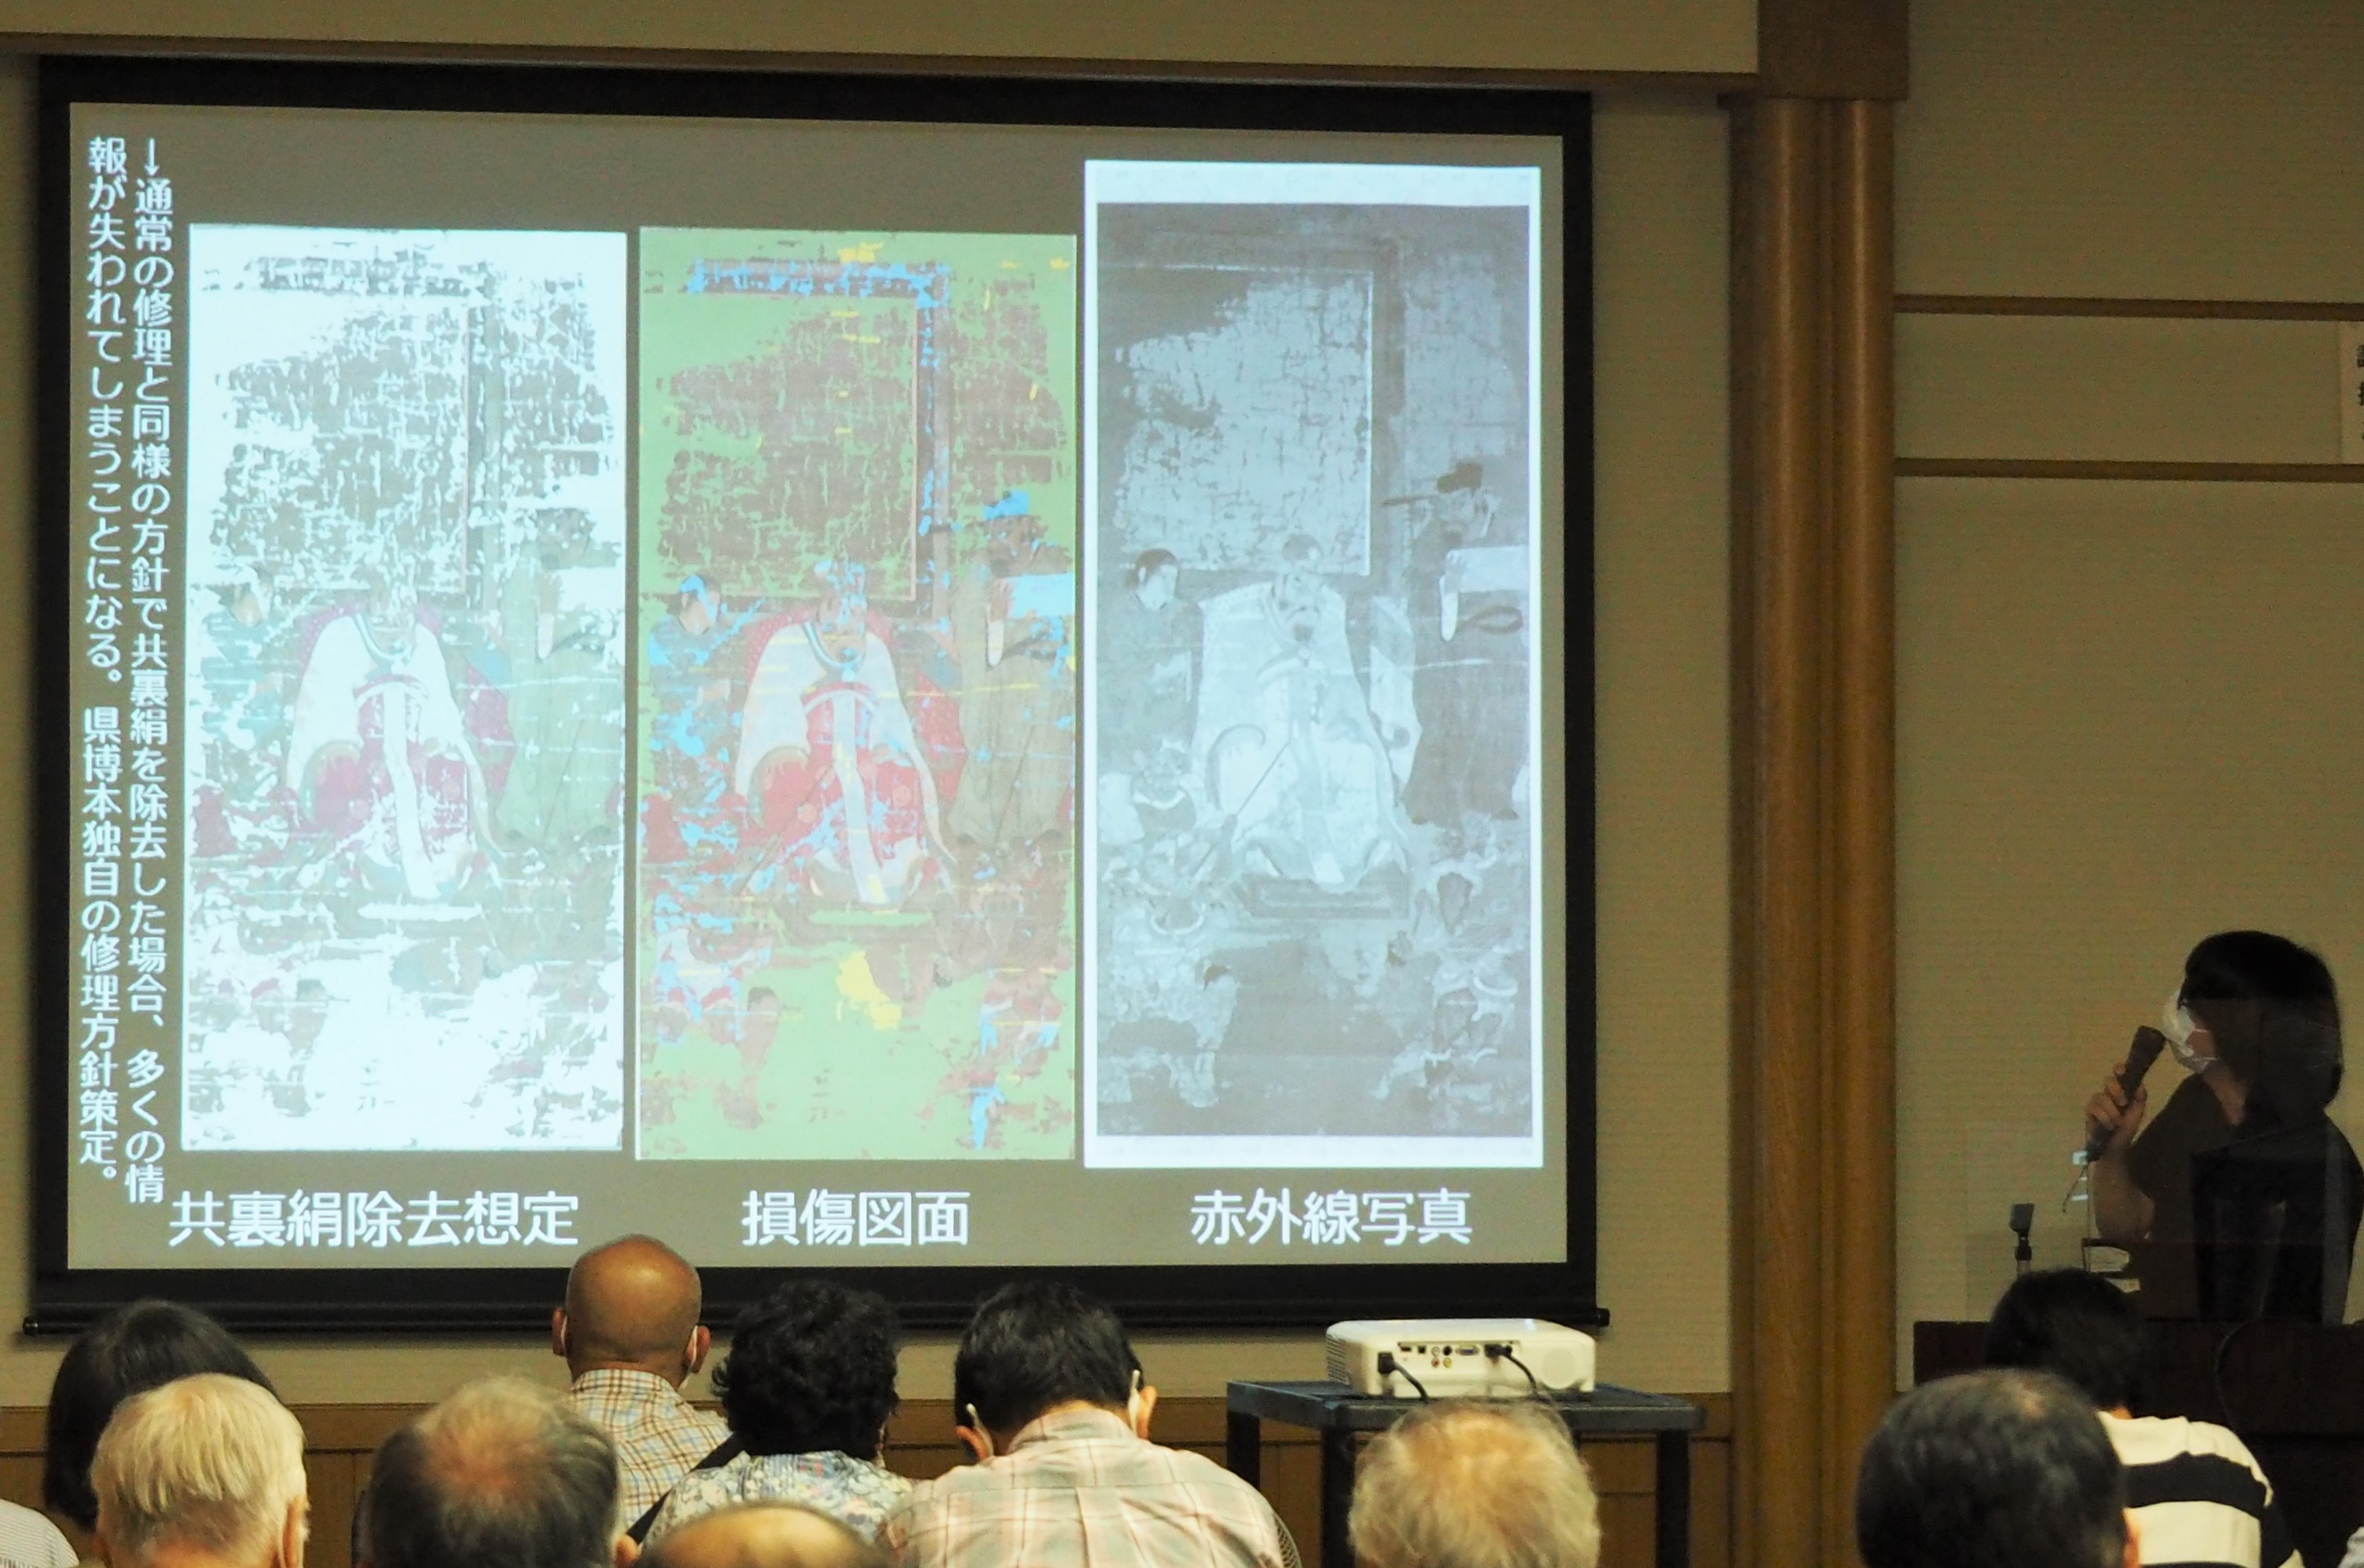 講演会 「神奈川県立歴史博物館所蔵の《十王図》について」